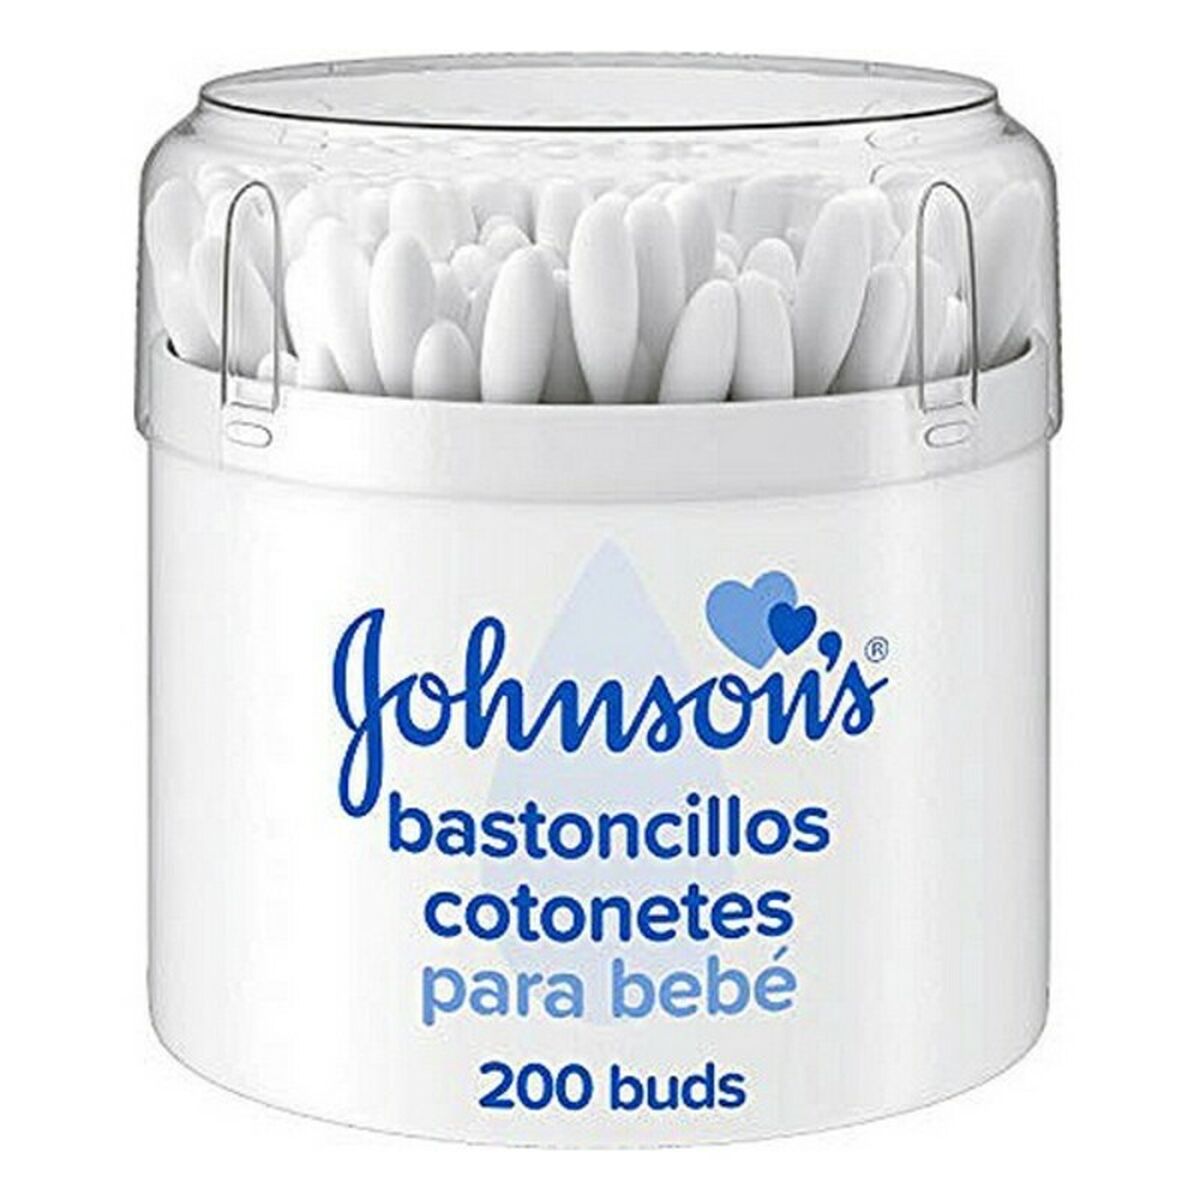 Bastoncini di Cotone Baby Johnson's (200 pcs)